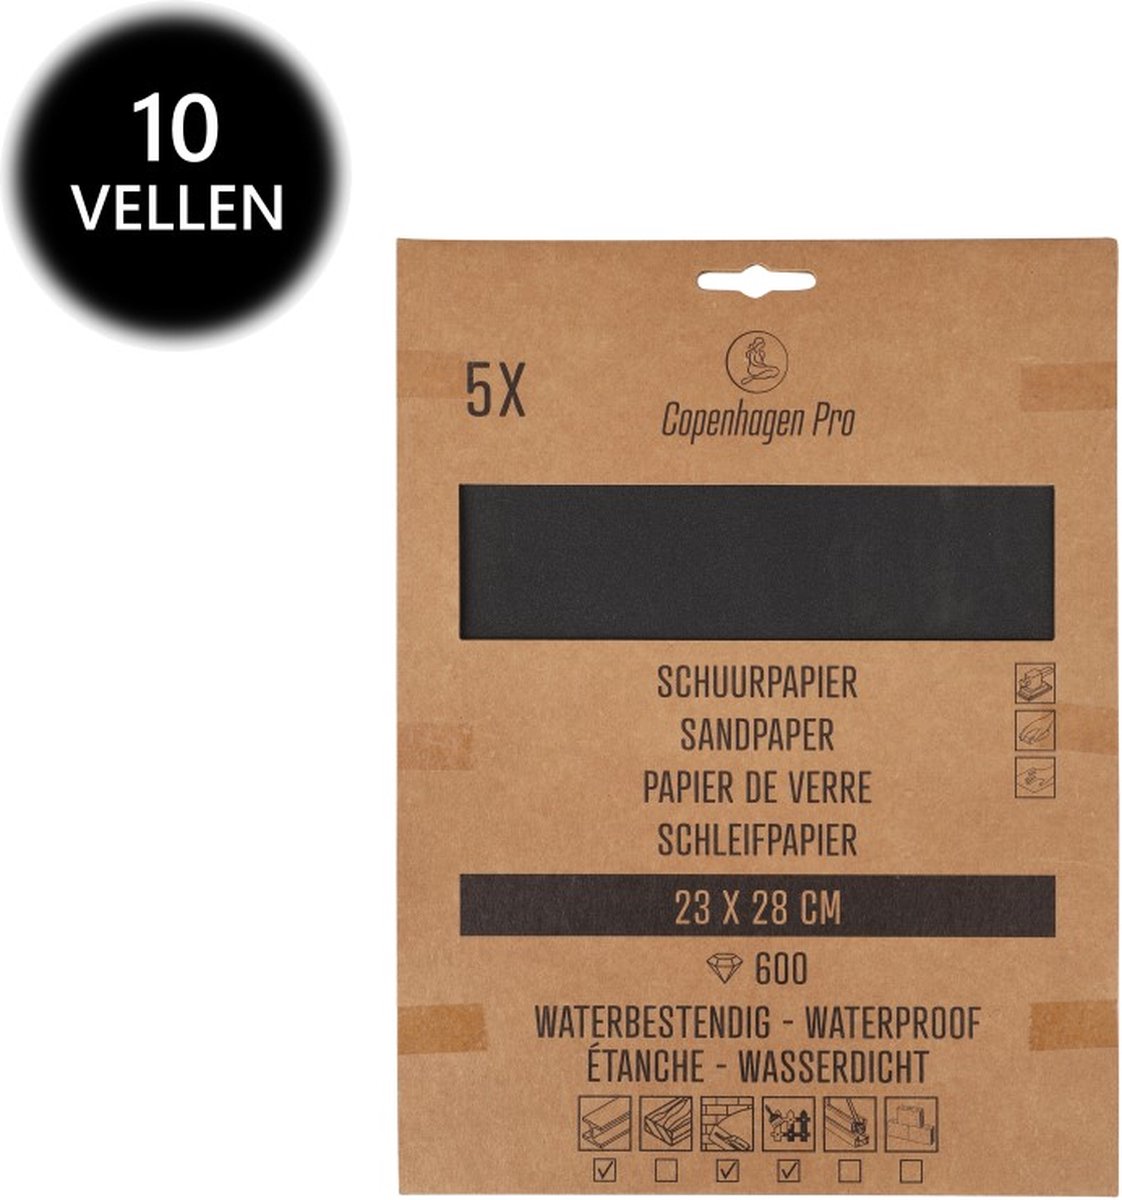 Copenhagen Pro schuurpapier - waterproof - korrel 600 - 10 vellen - 28 x 23 cm